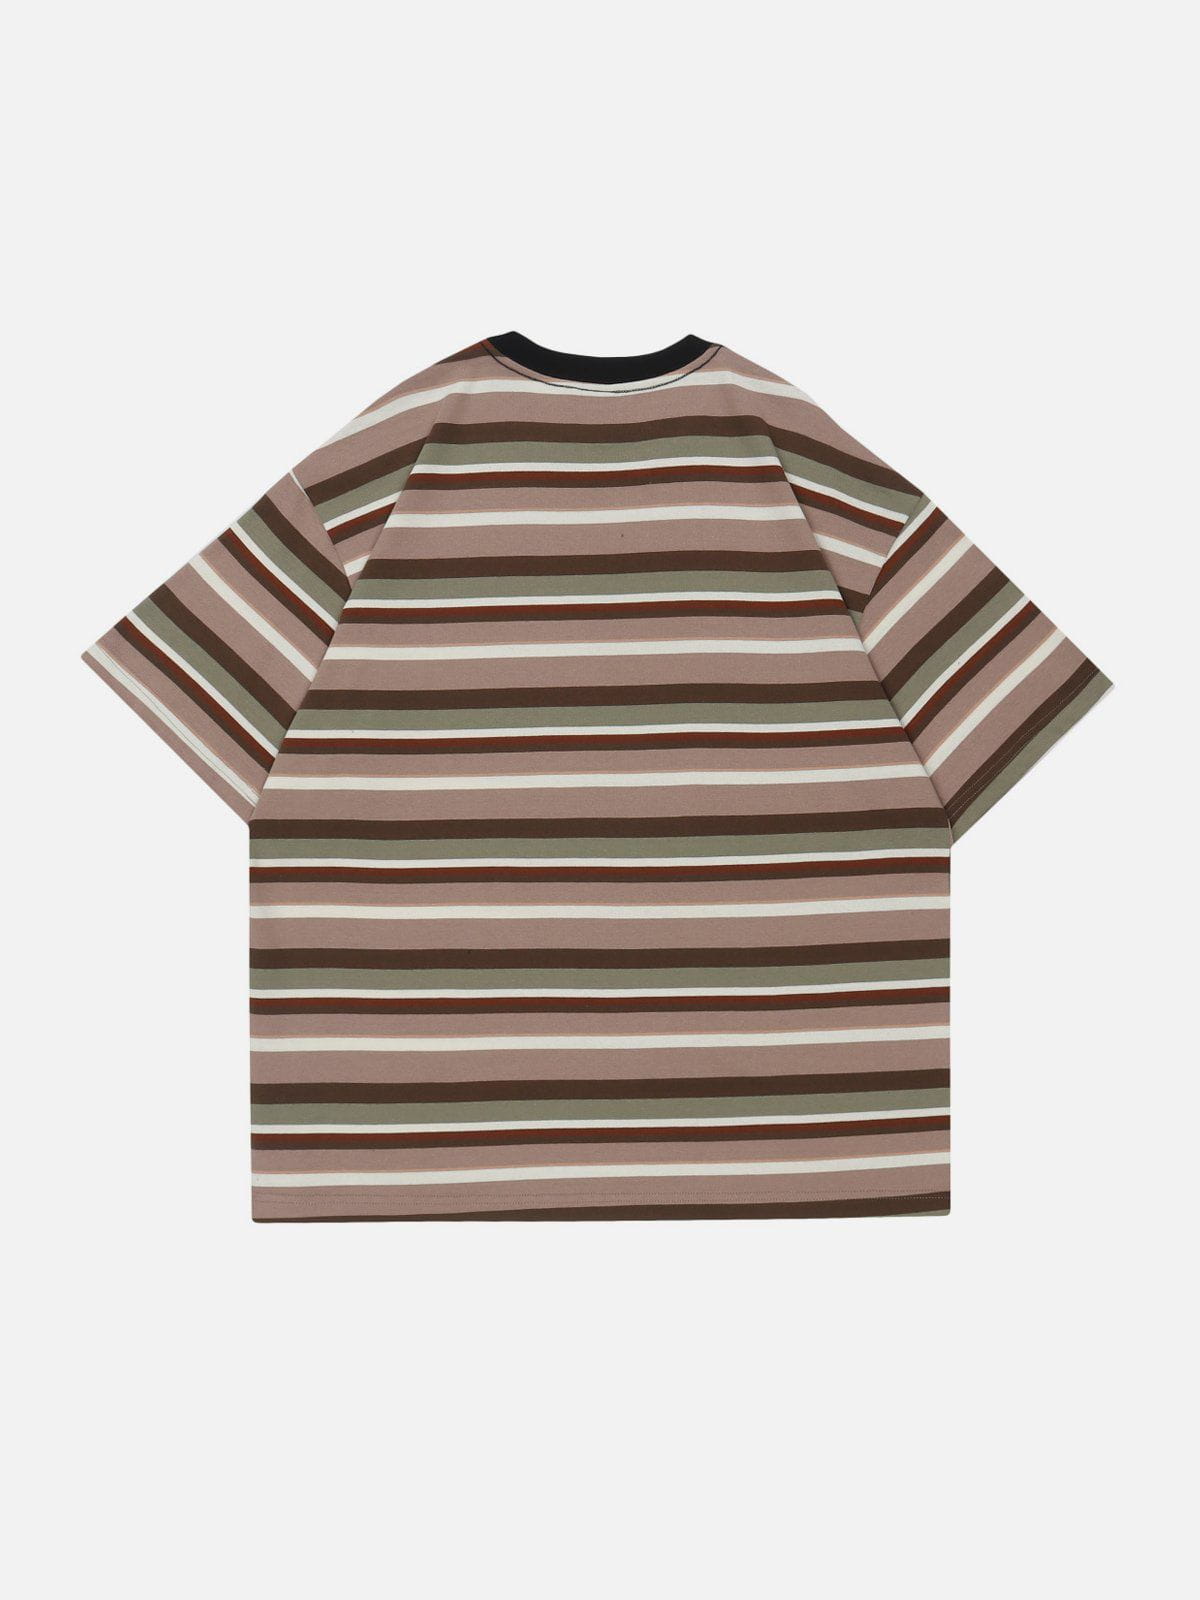 Eprezzy® - Striped Clash Tee Streetwear Fashion - eprezzy.com